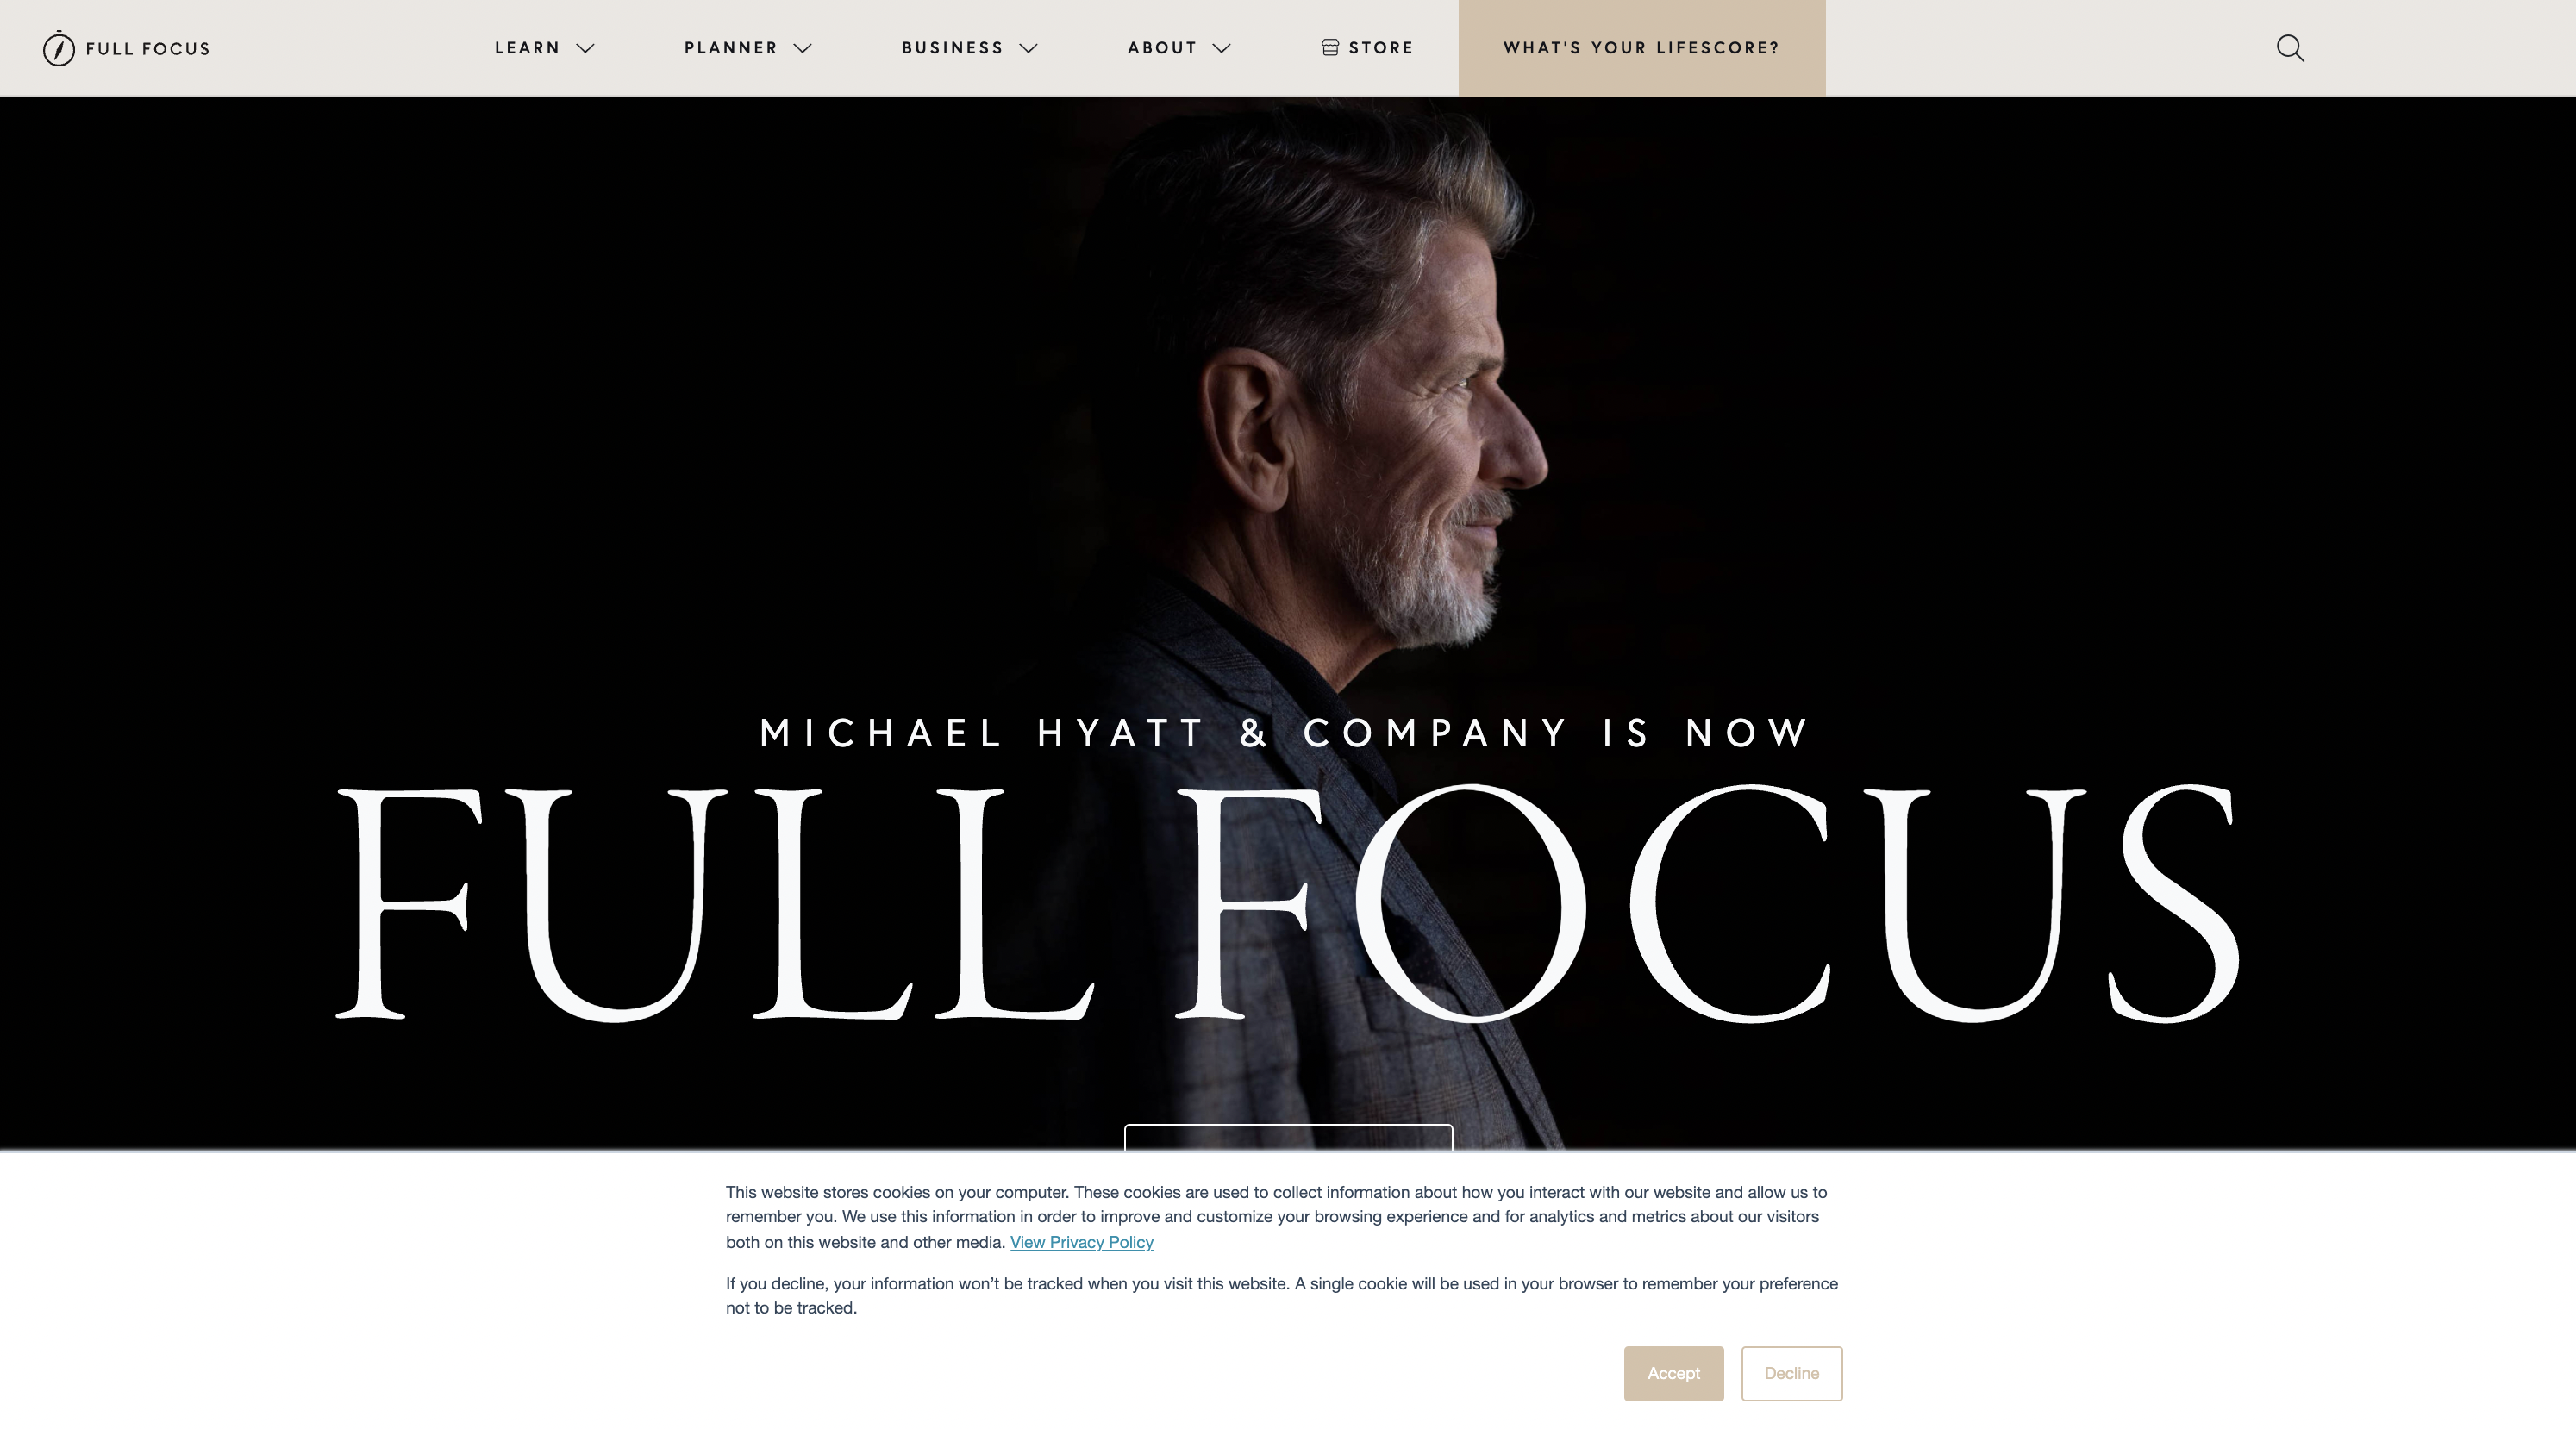 Michael Hyatt coach website